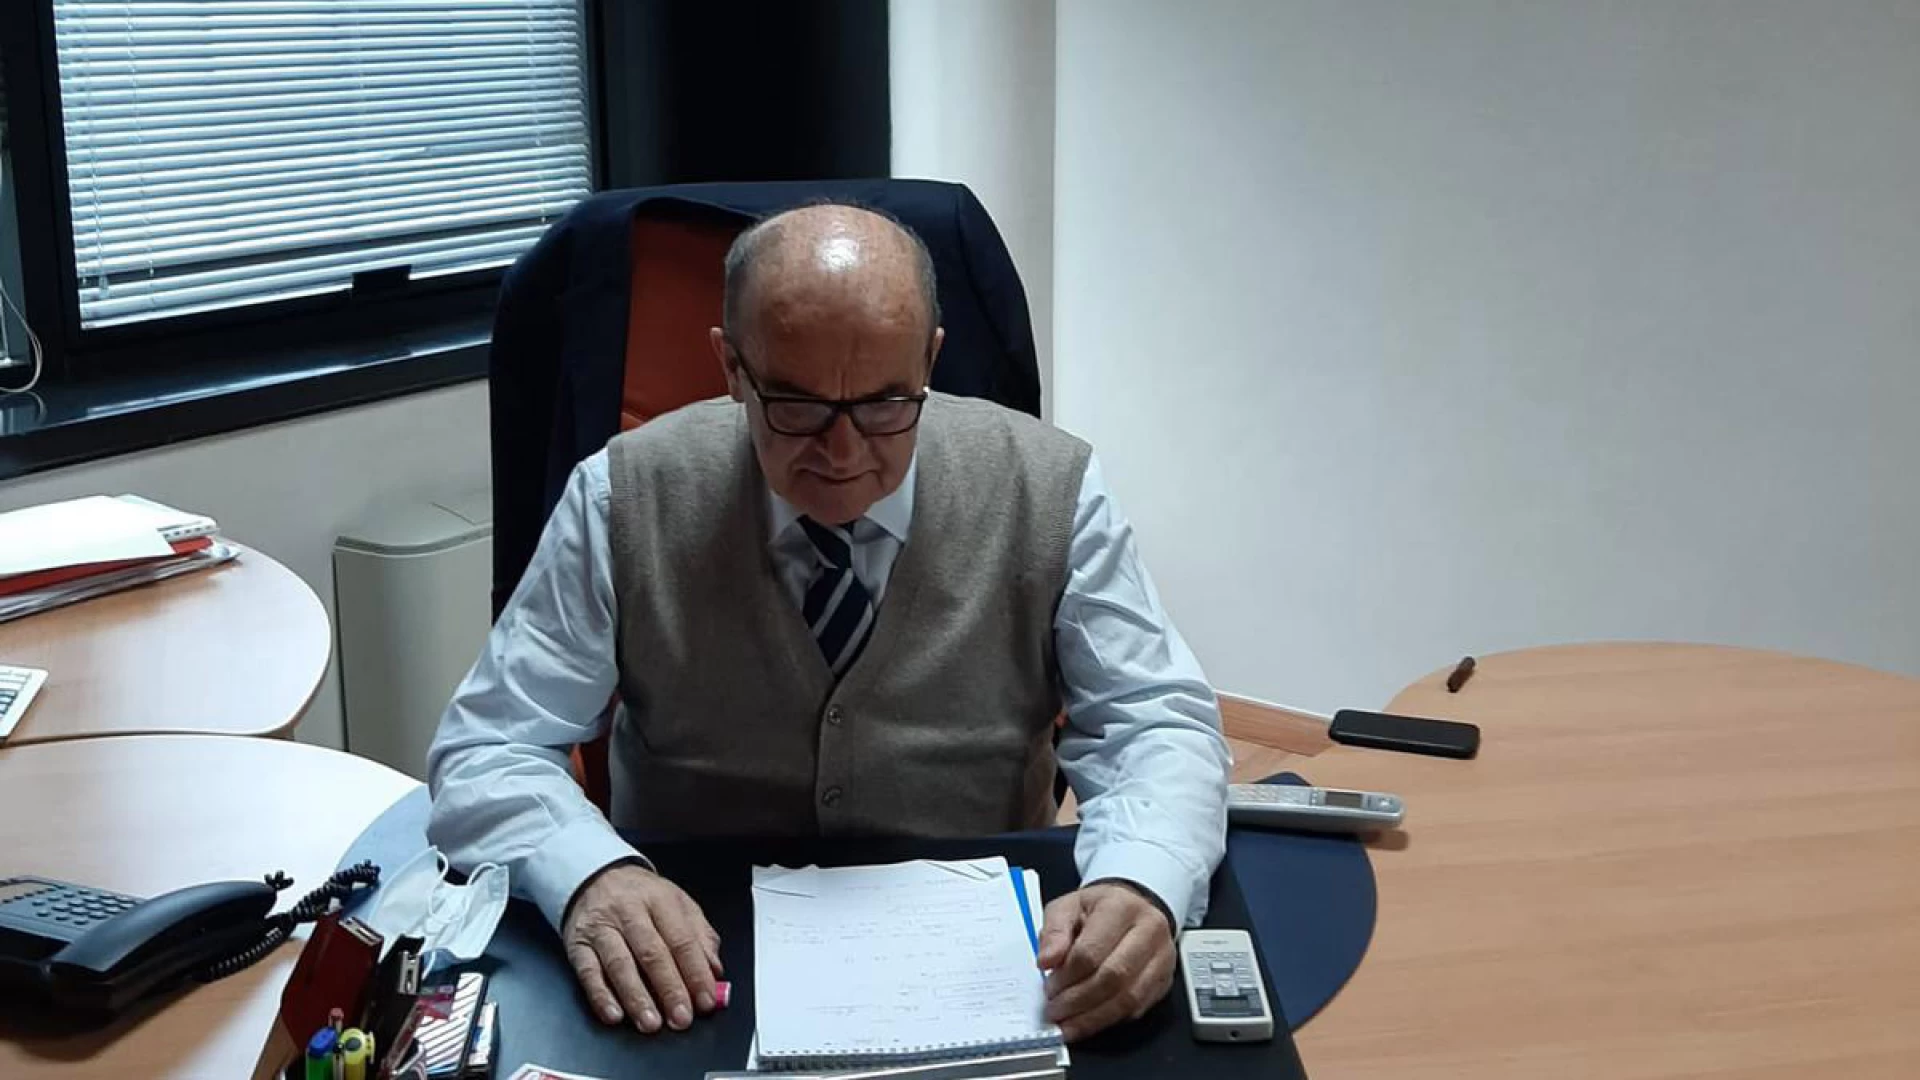 Montaquila: nuovi casi di Covid in paese. Il sindaco Marciano Ricci: "Rispettare le regole fino al termine della campagna vaccinale".